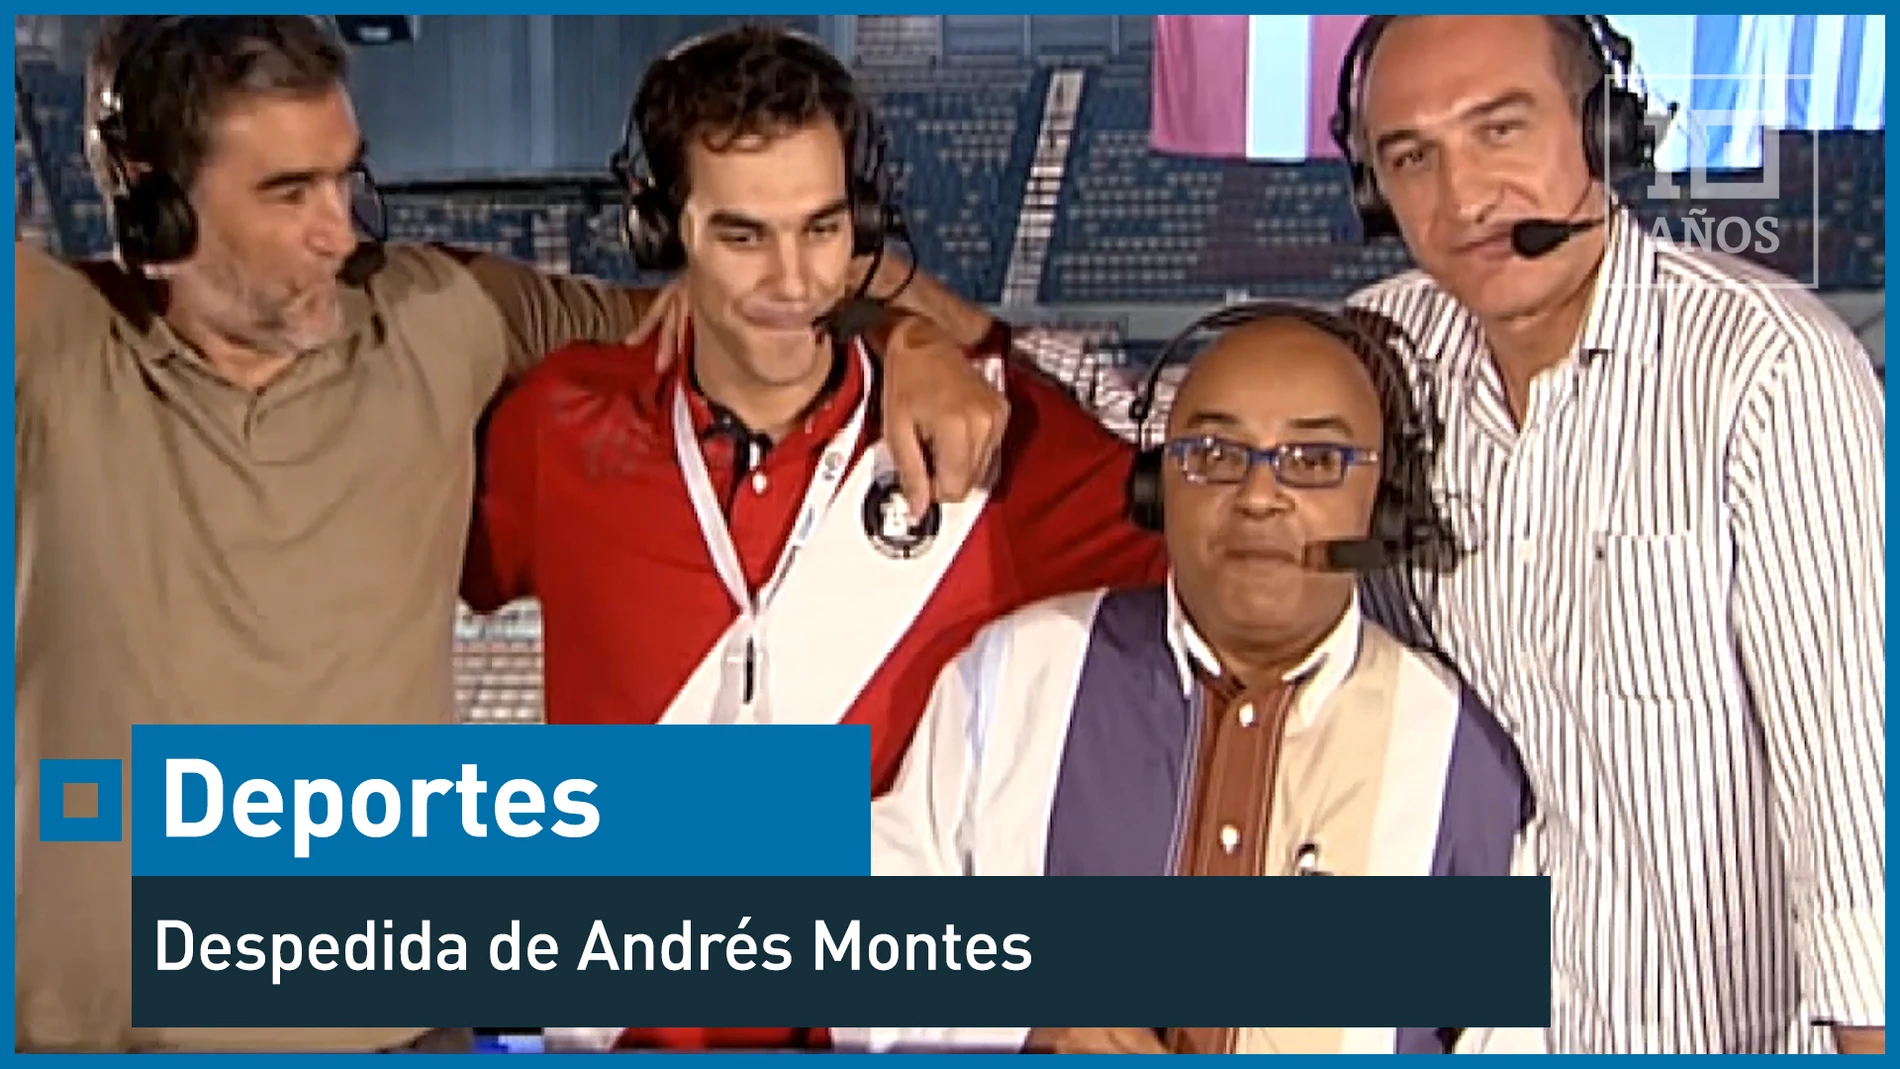 2009. Andrés Montes se despide de laSexta: "La vida puede ser maravillosa" - Deportes - laSexta 15º aniversario